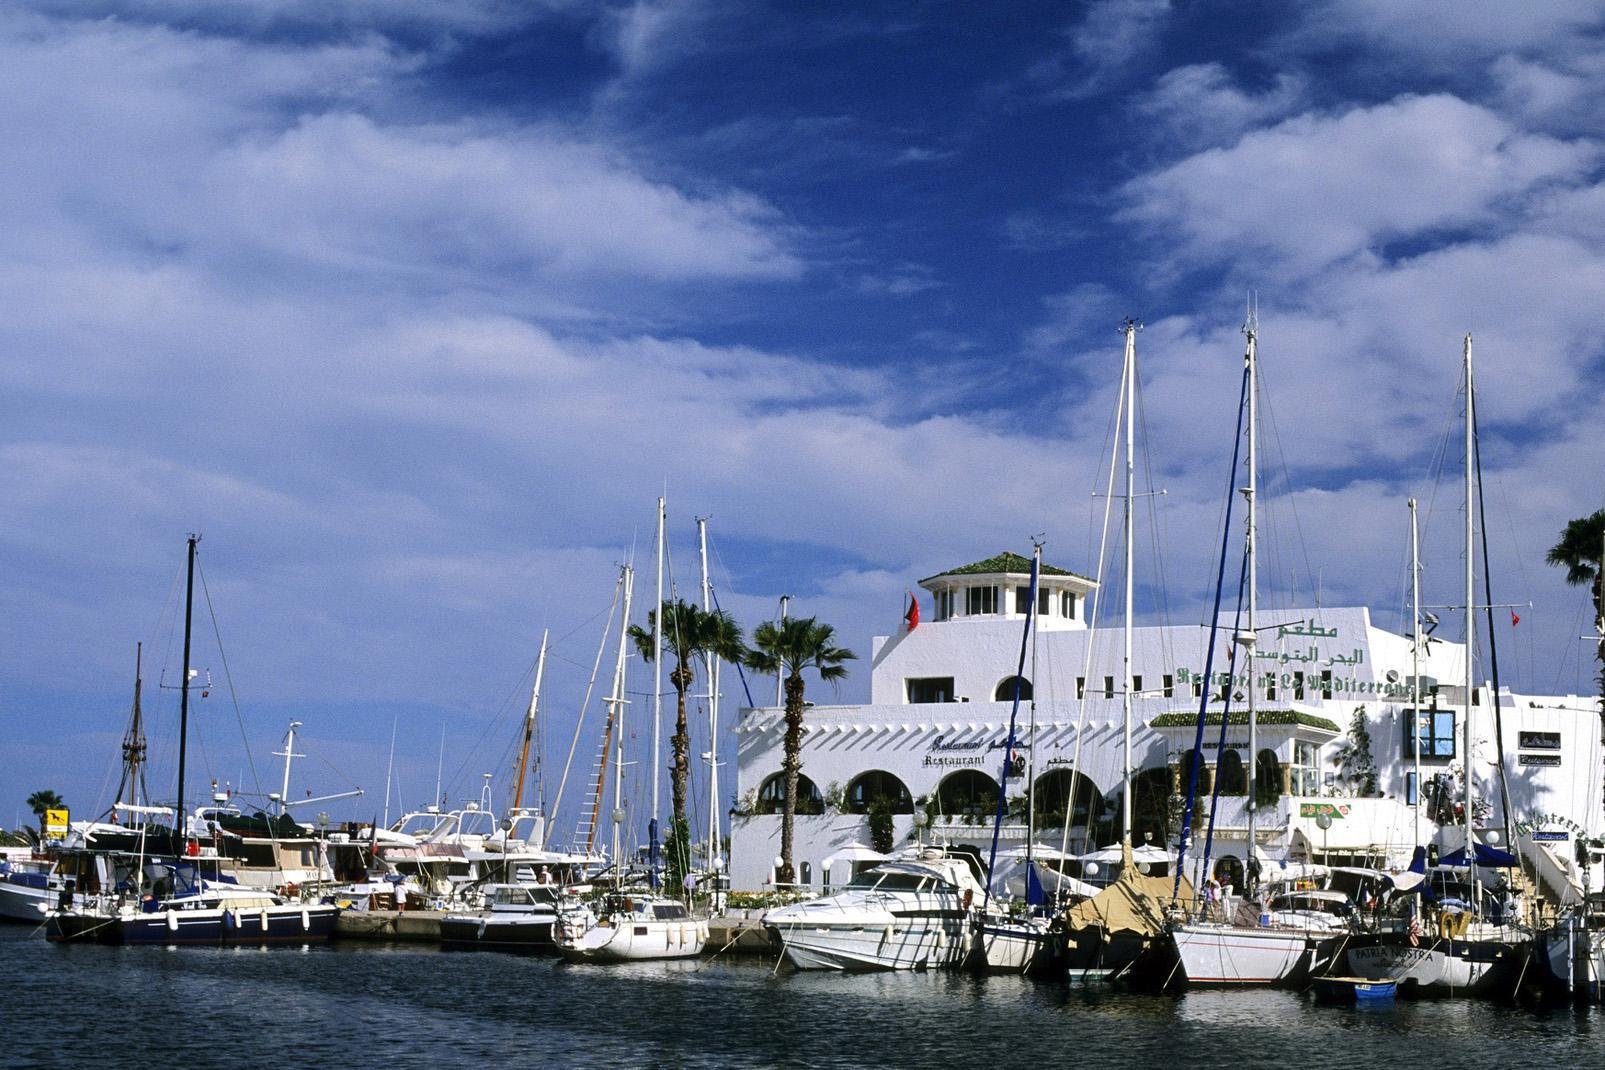 Über Port El Kantaoui sagt man, dass es das tunesische Saint-Tropez ist. Die Atmosphäre ist angenehm schick, ohne Schnickschnack und enormen Andrang, und im Hafen laufen sowohl Jachten, als auch Schiffe für eintägige Ausflüge an. Port El Kantaoui empfiehlt sich wegen seines Charmes, der guten Stimmung in der Hauptsaison und wegen der Strände, die zu den schönsten der tunesischen Riviera zählen.Das ...